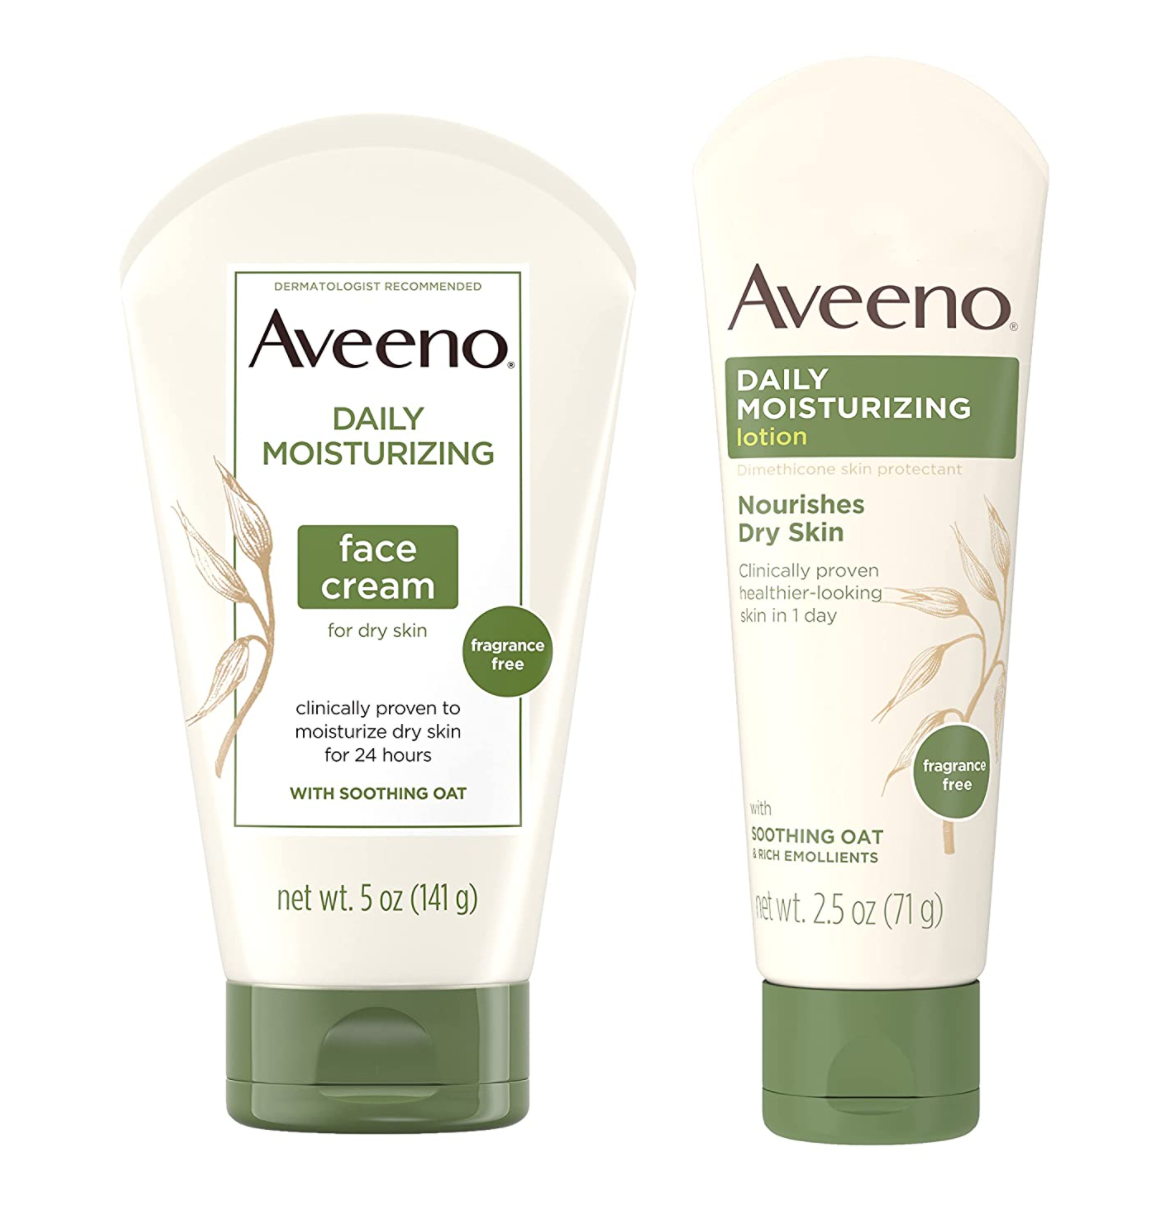 Aveeno Daily Moisturizing, anti-inflammatory skin-care